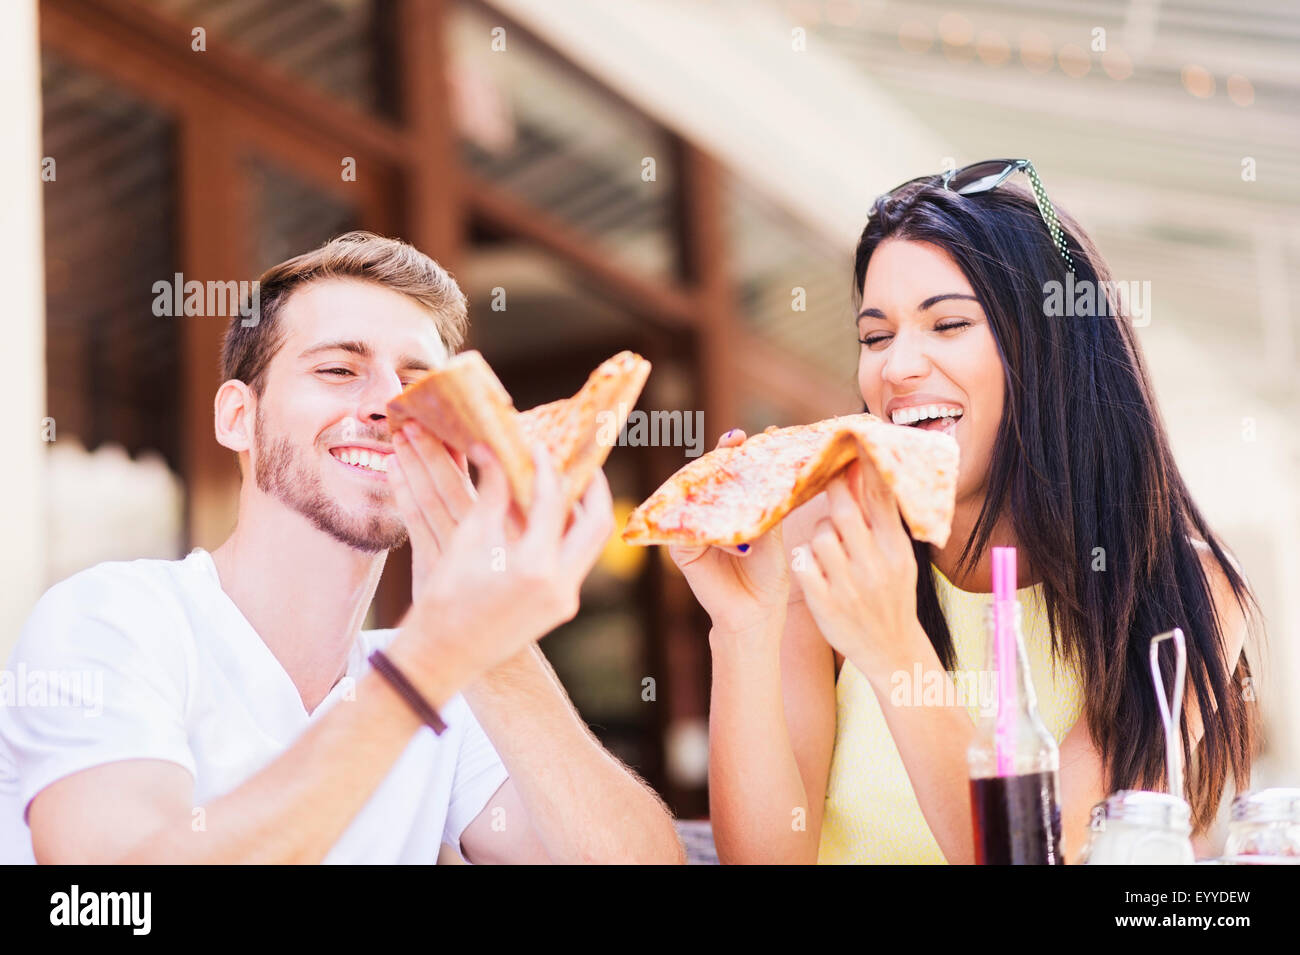 Hispanic couple eating pizza at cafe Stock Photo